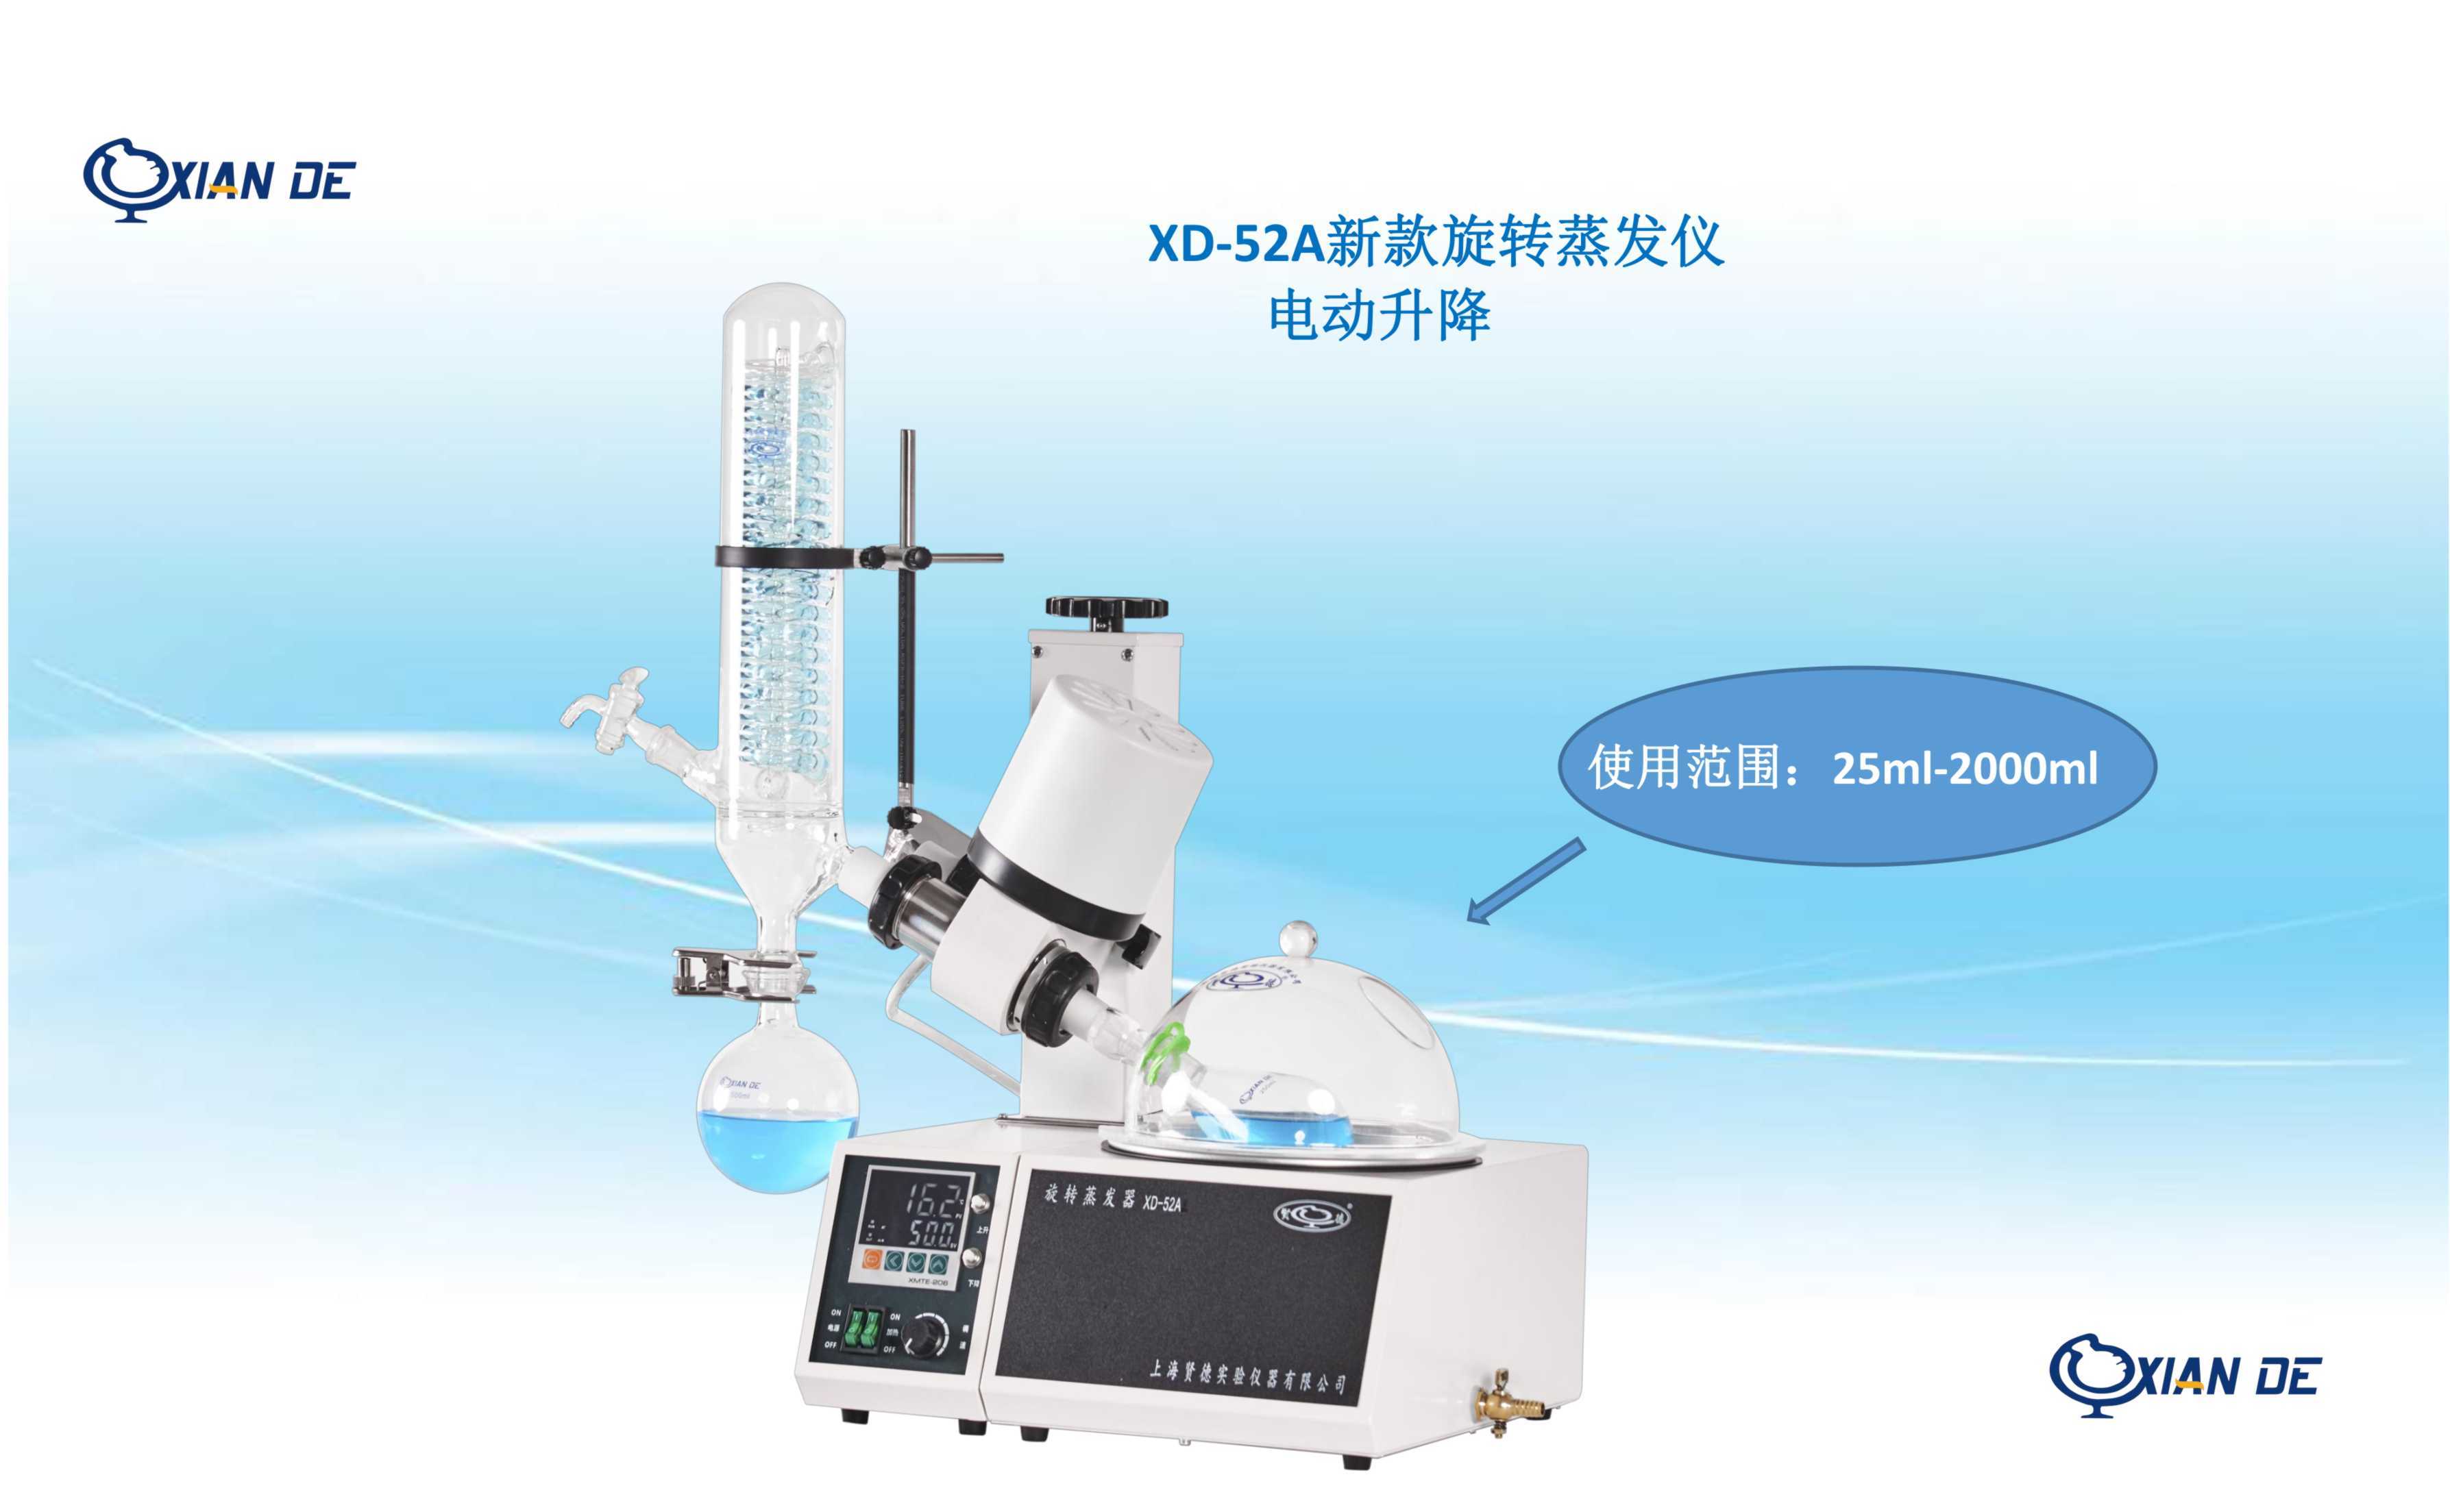 上海贤德XD-52A新款球磨口冷凝管旋转蒸发仪